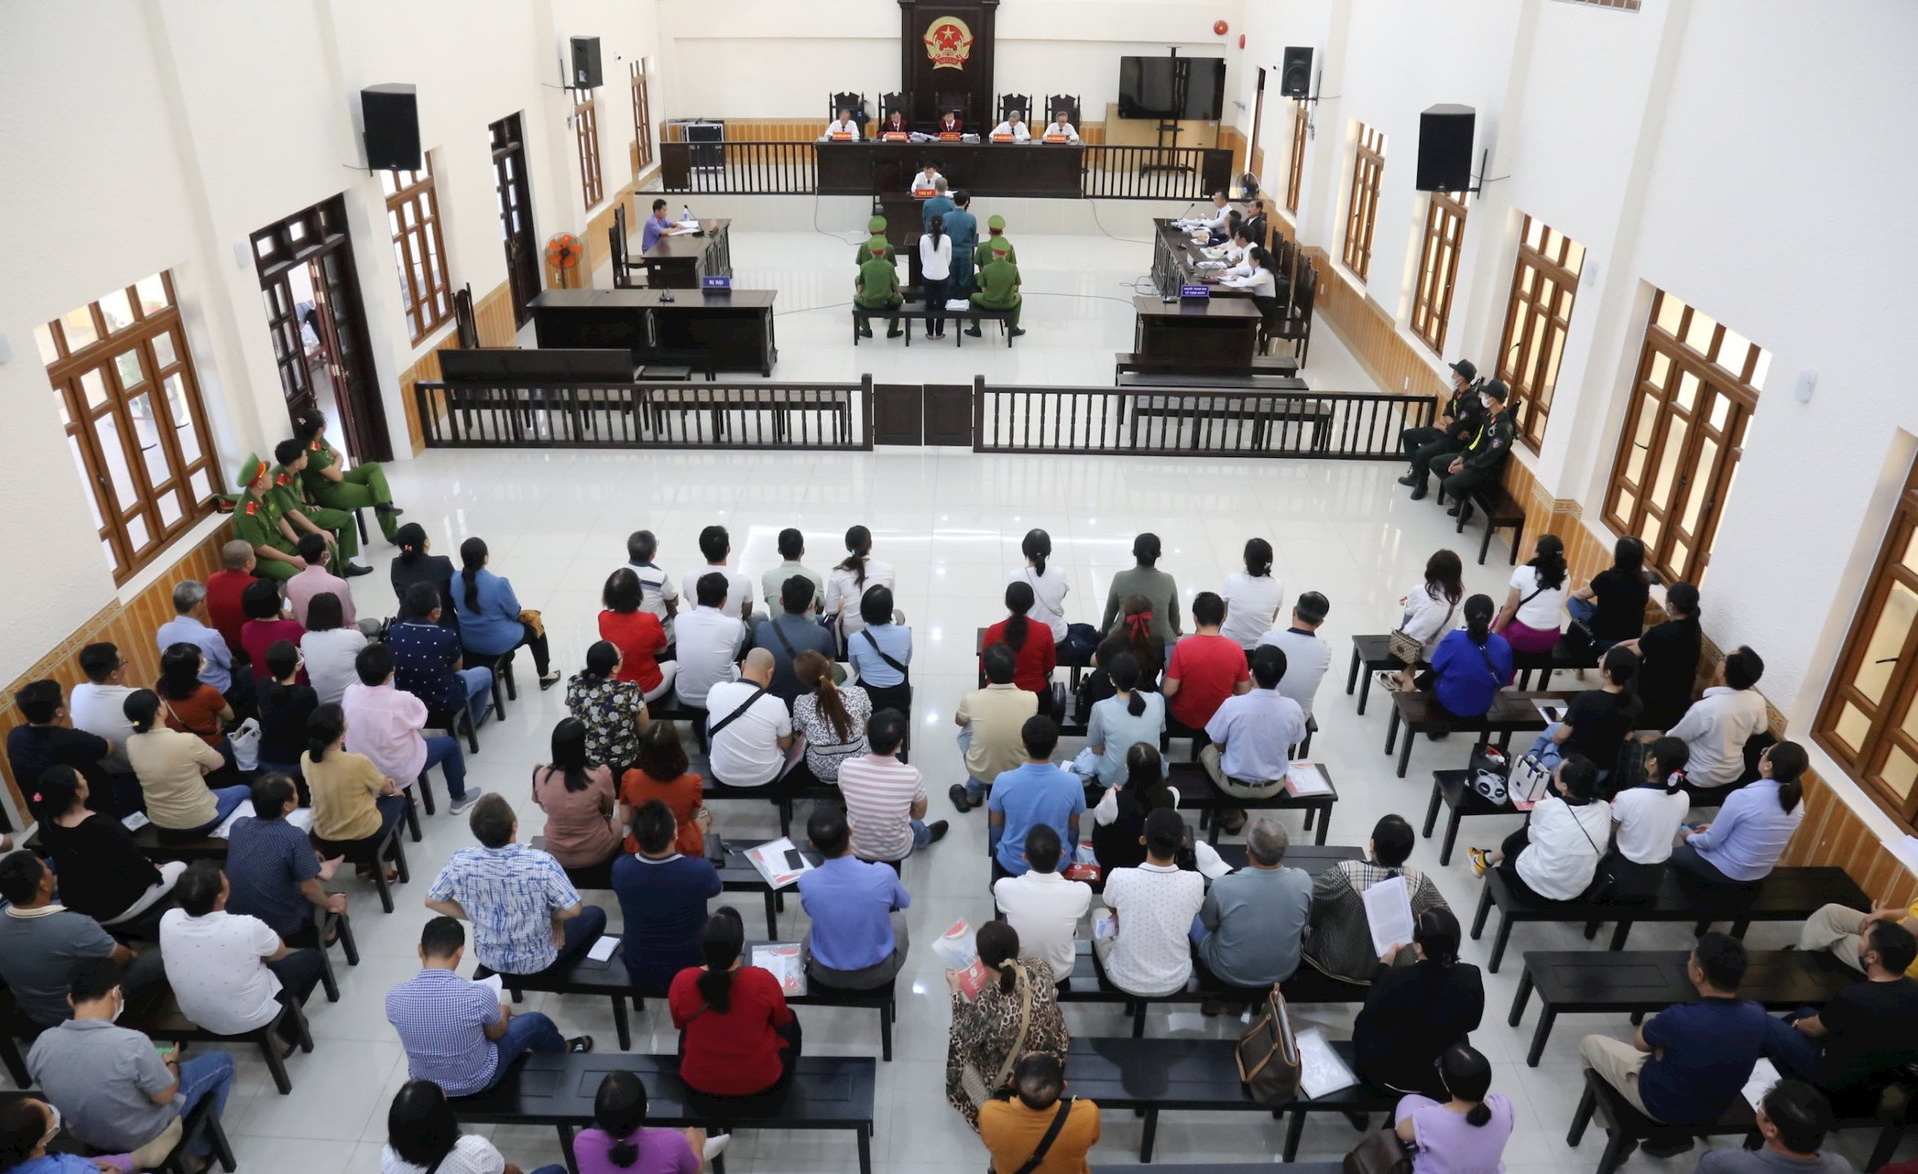 Mở phiên tòa xét xử giám đốc công ty bất động sản Hưng Thịnh Phát lừa đảo gần 200 người- Ảnh 2.